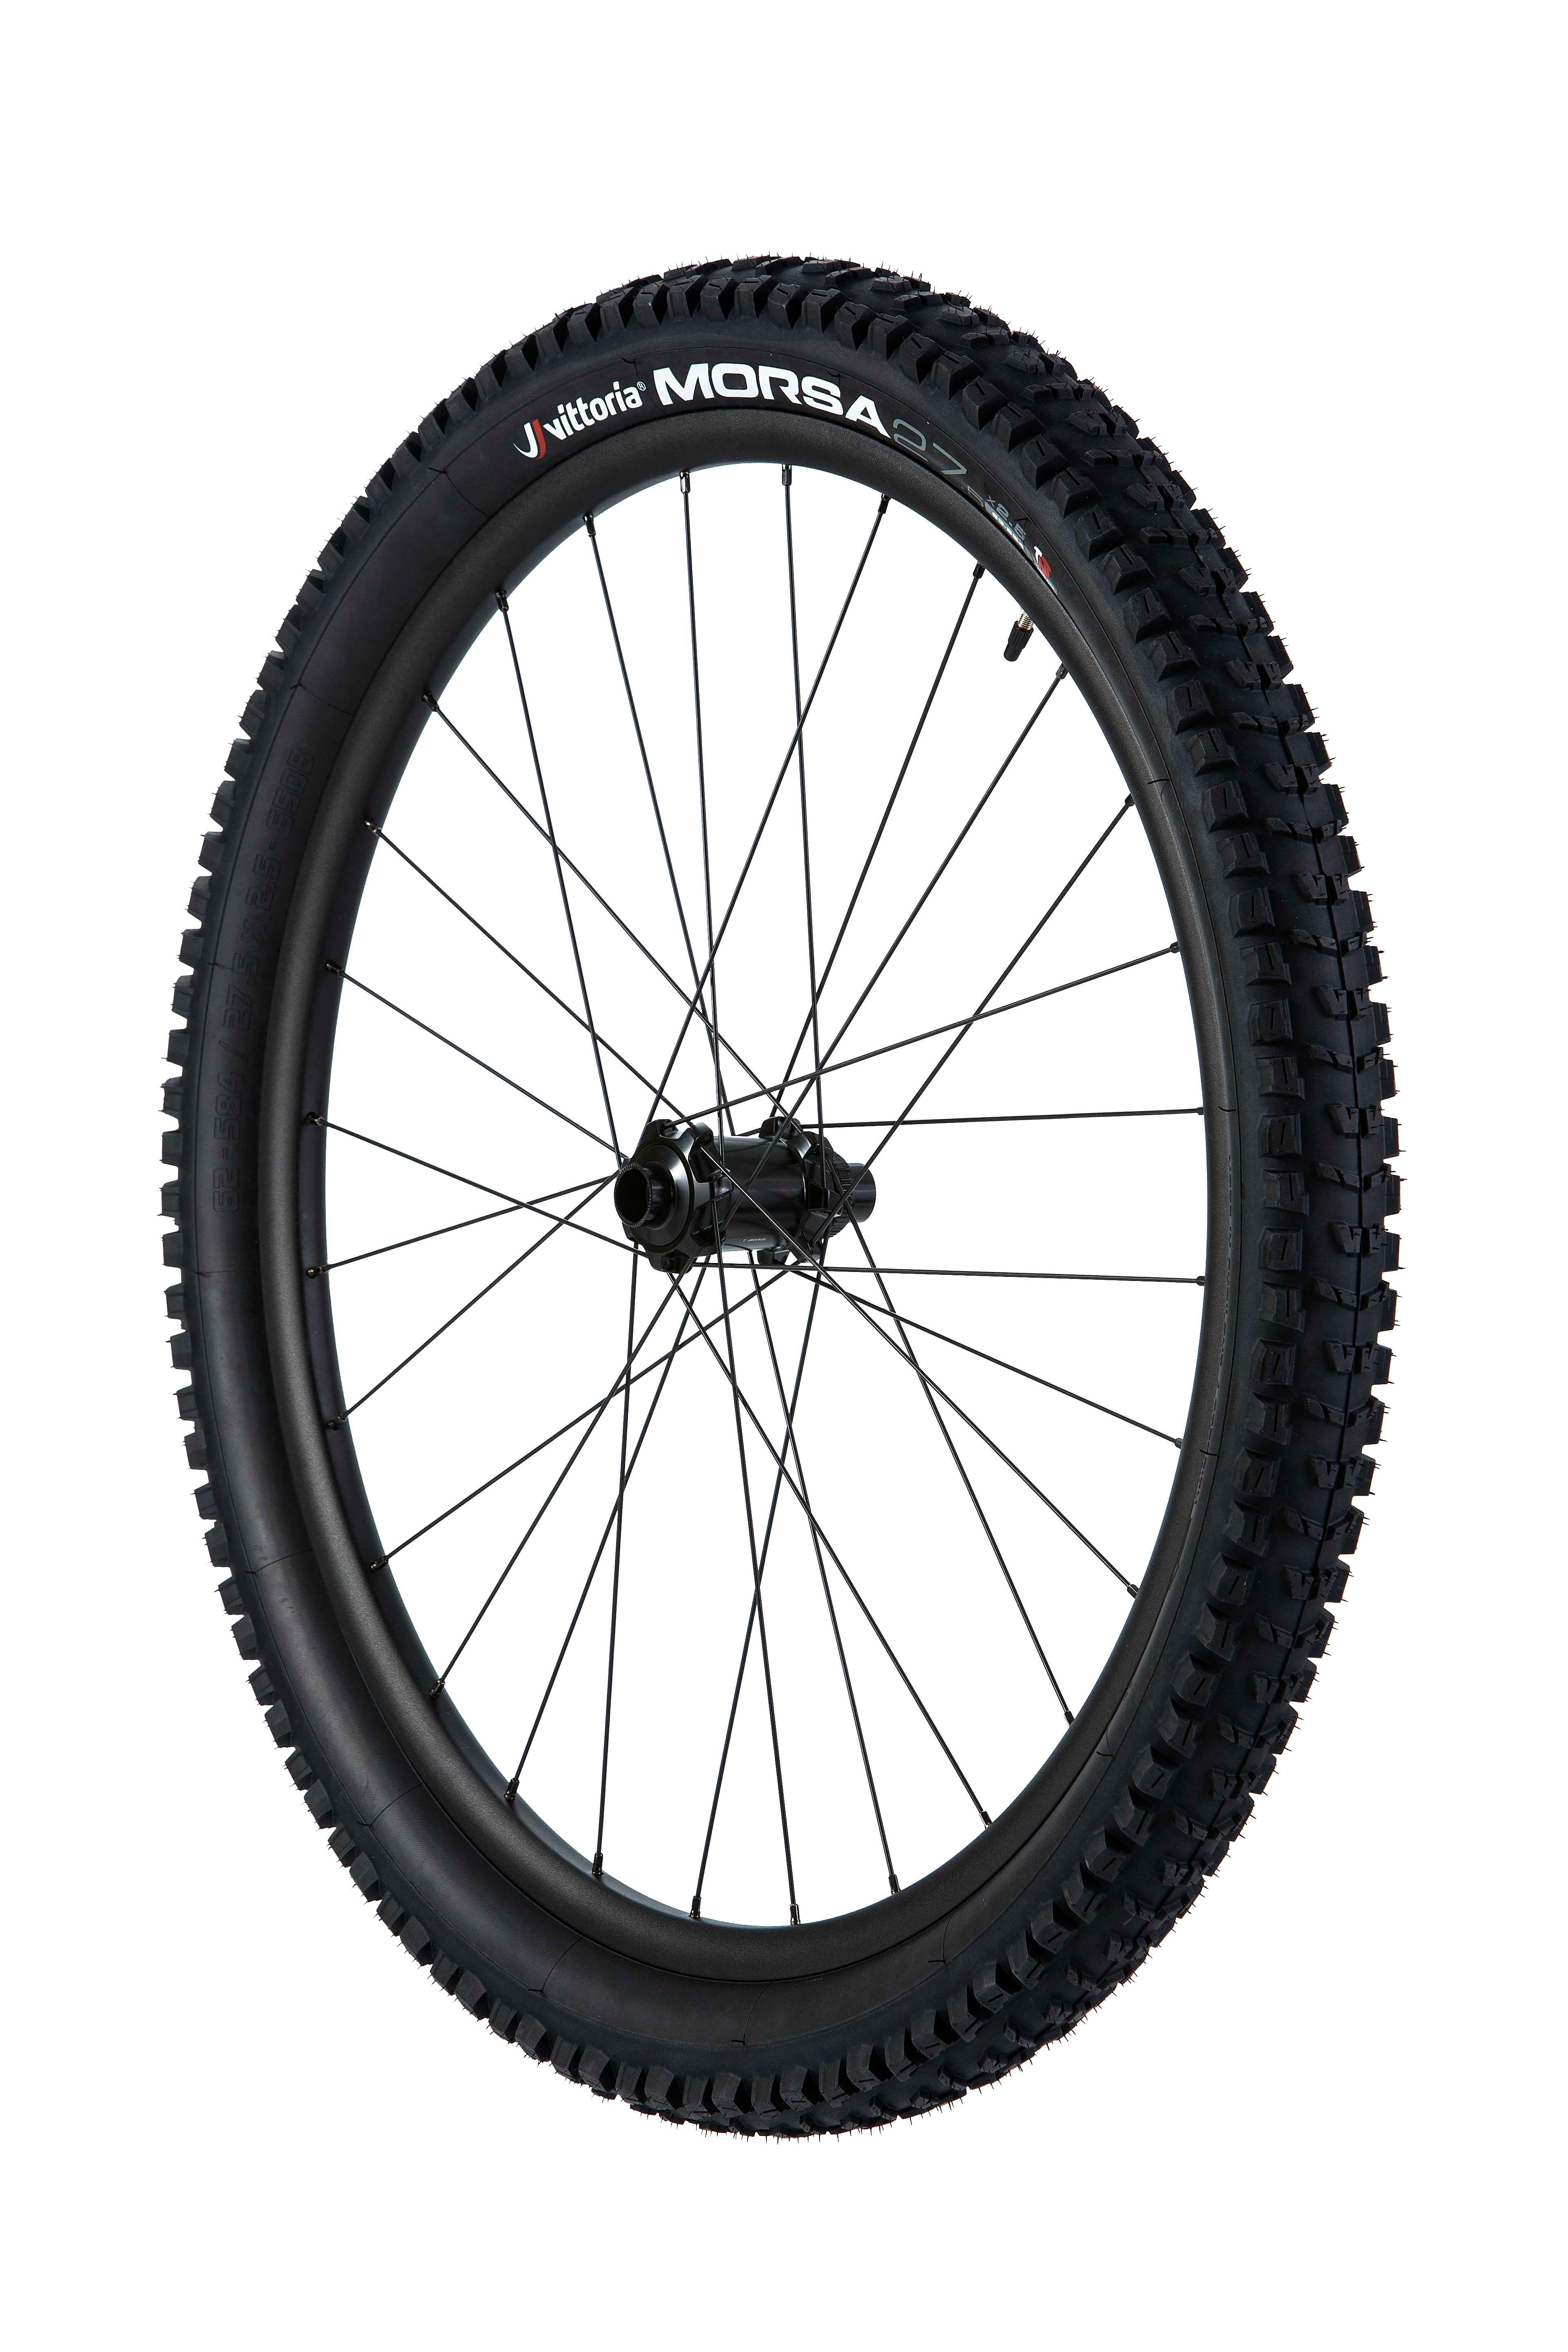 Vittoria Morsa Graphene G RTNT 27.5 x 2.5 DH Downhill Bike Tire Tubeless 1320g 